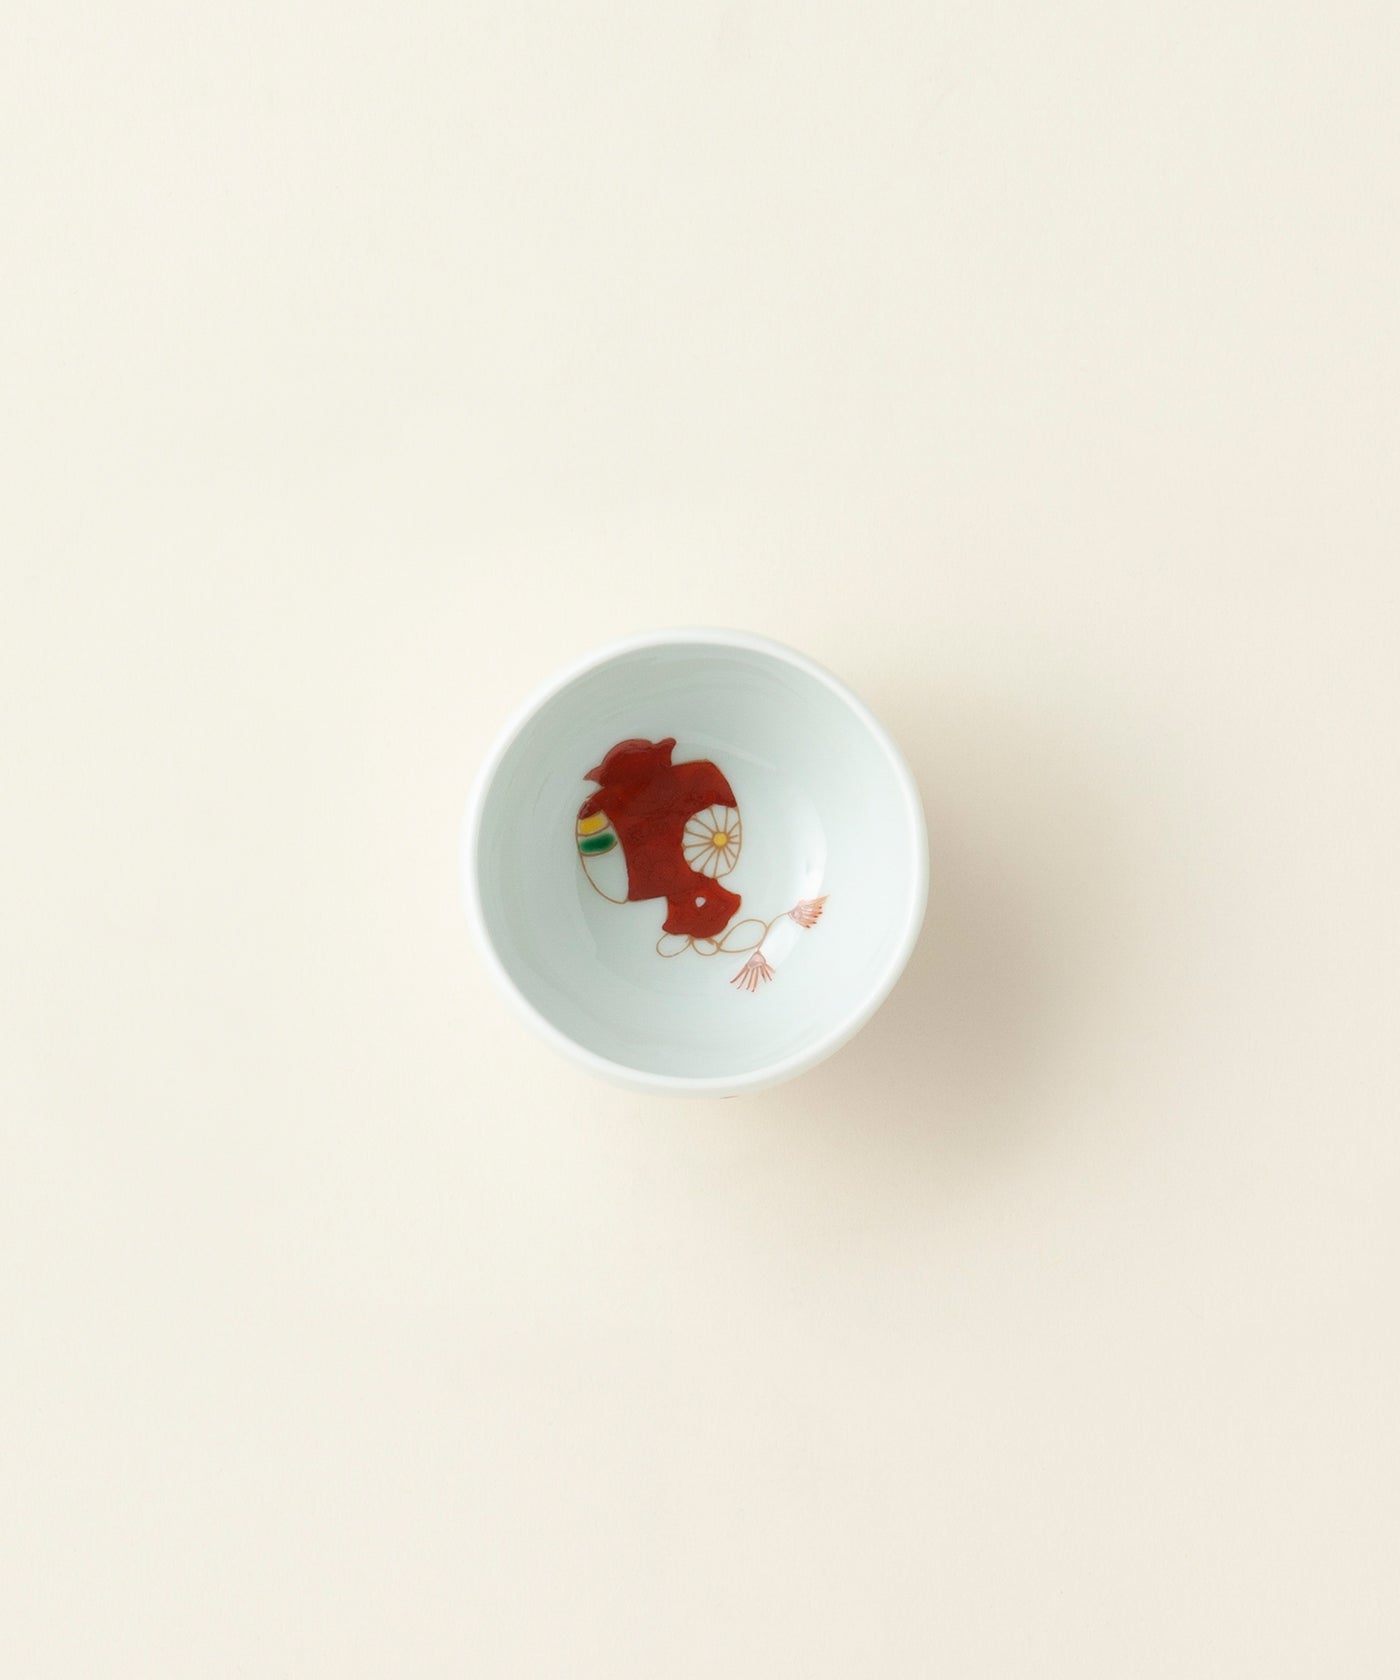 【西海陶器】 SAIKAI めでた 姫碗 2枚セット